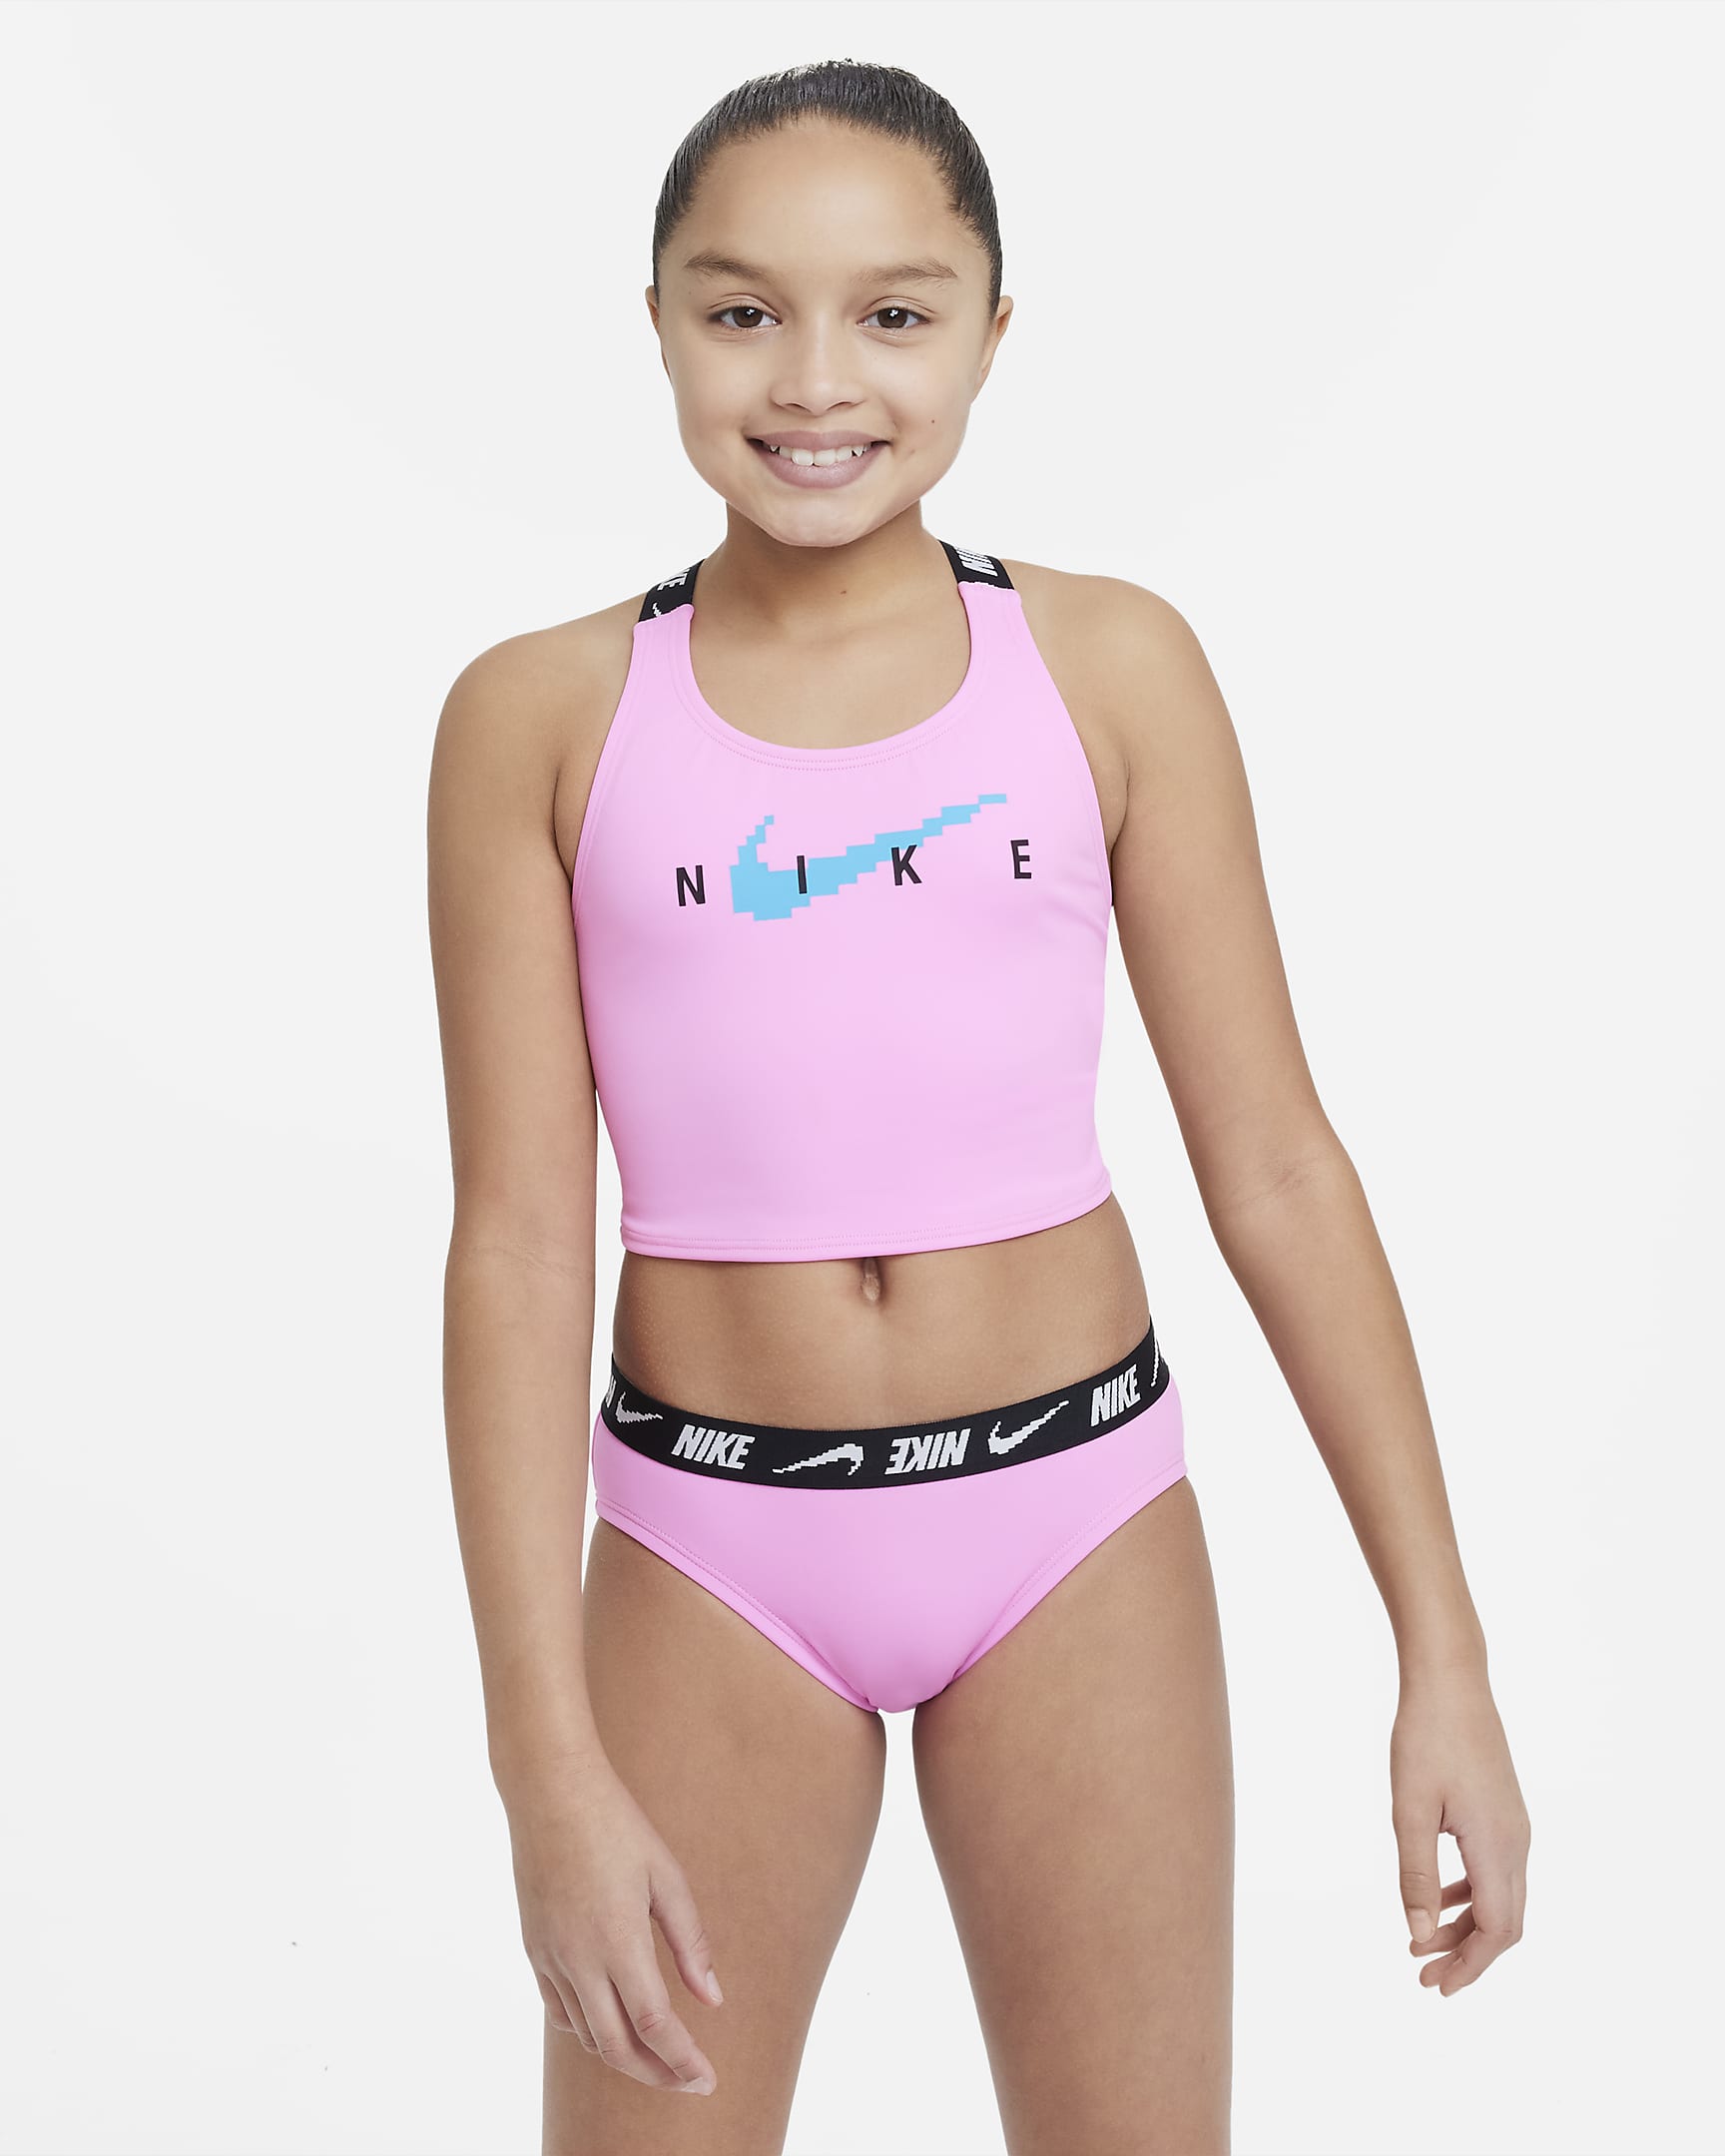 Nike-midkinisvømmesæt med krydsryg til større børn (piger) - Pink Spell/Blue Lightning/sort